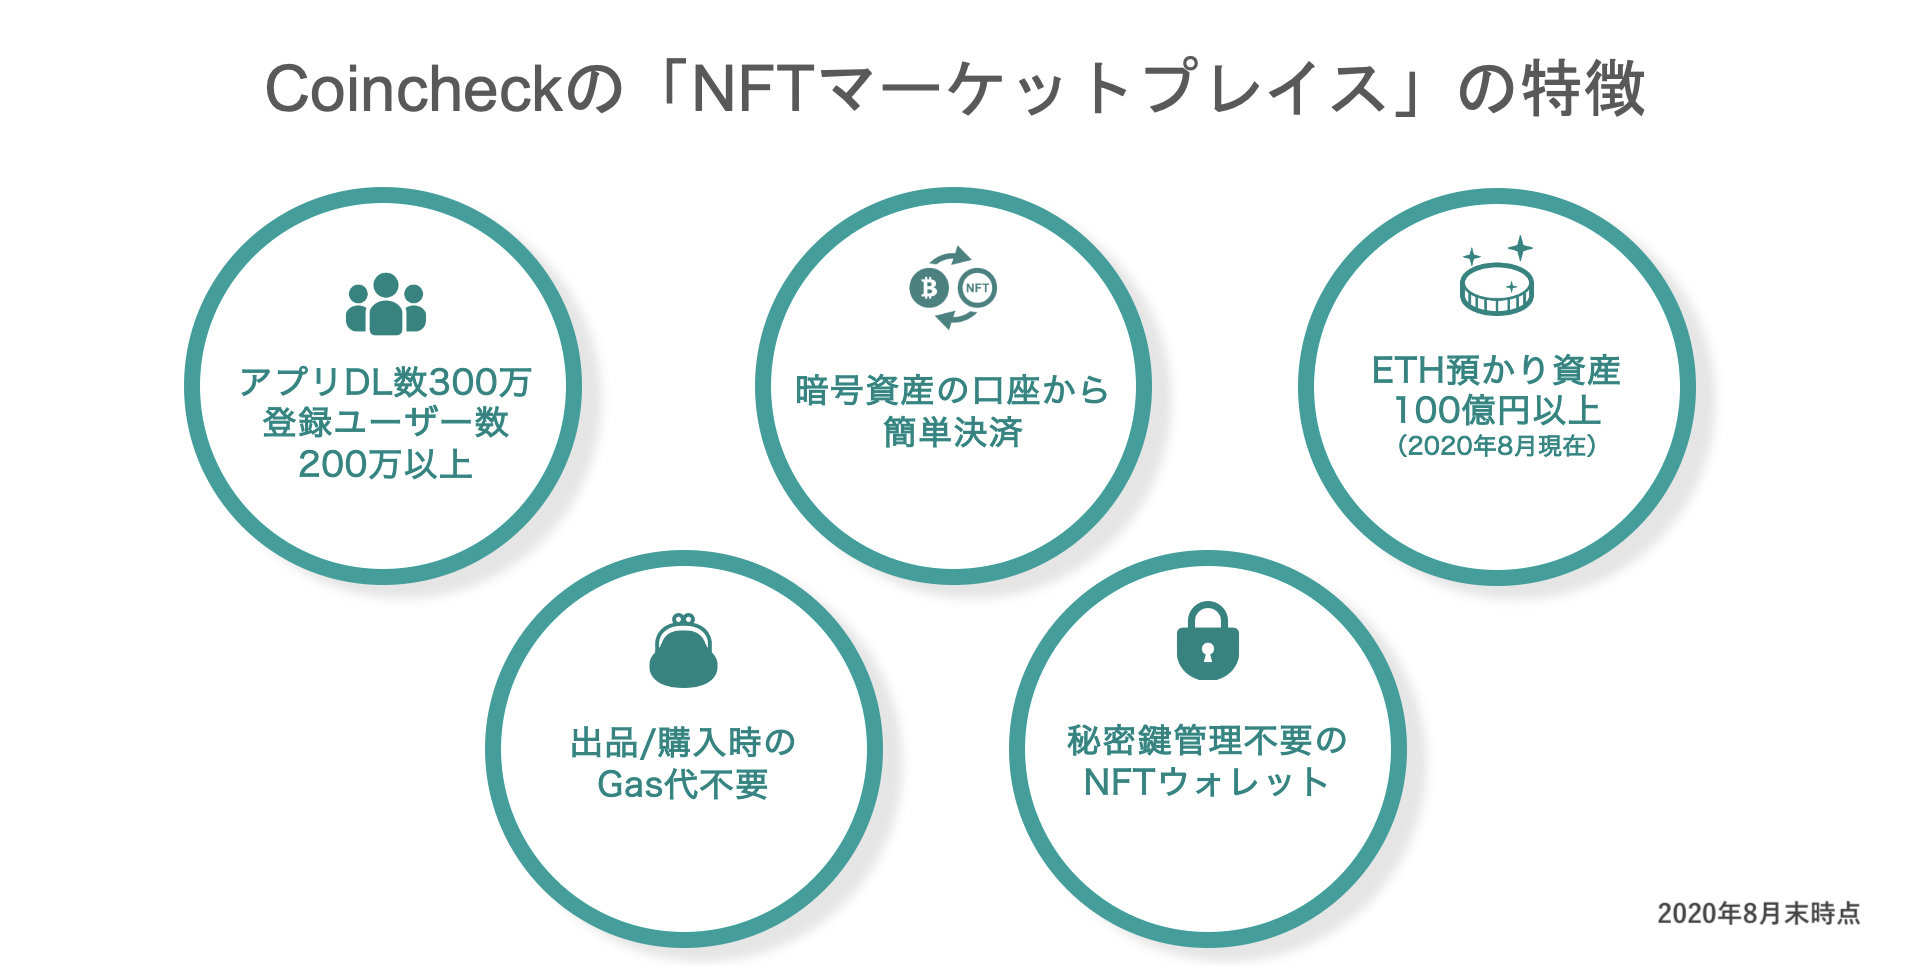 【プレスリリース】コインチェック、大人気ゲーム「マインクラフト」内で利用可能なNFTの取扱いに向け「Enjin」と連携を開始